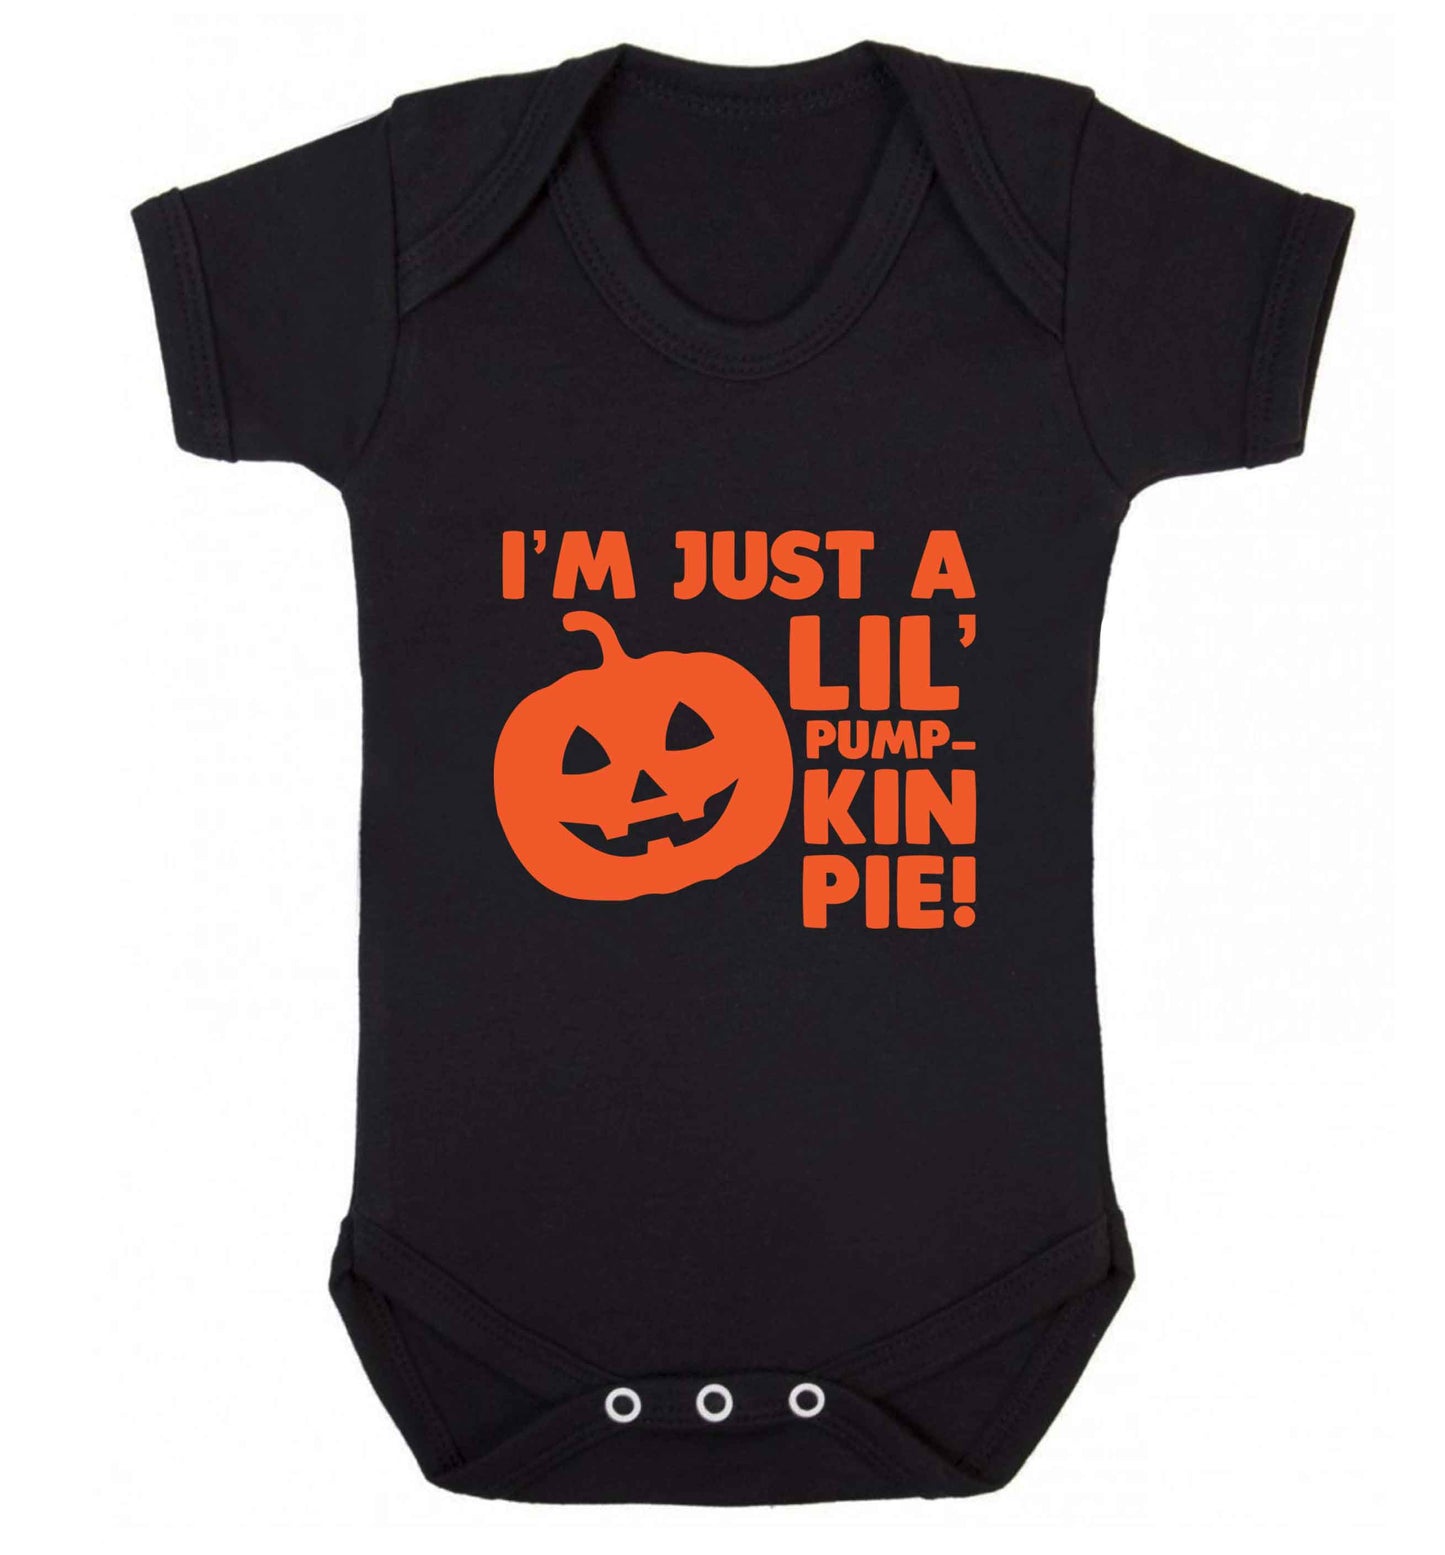 I'm just a lil' pumpkin pie baby vest black 18-24 months